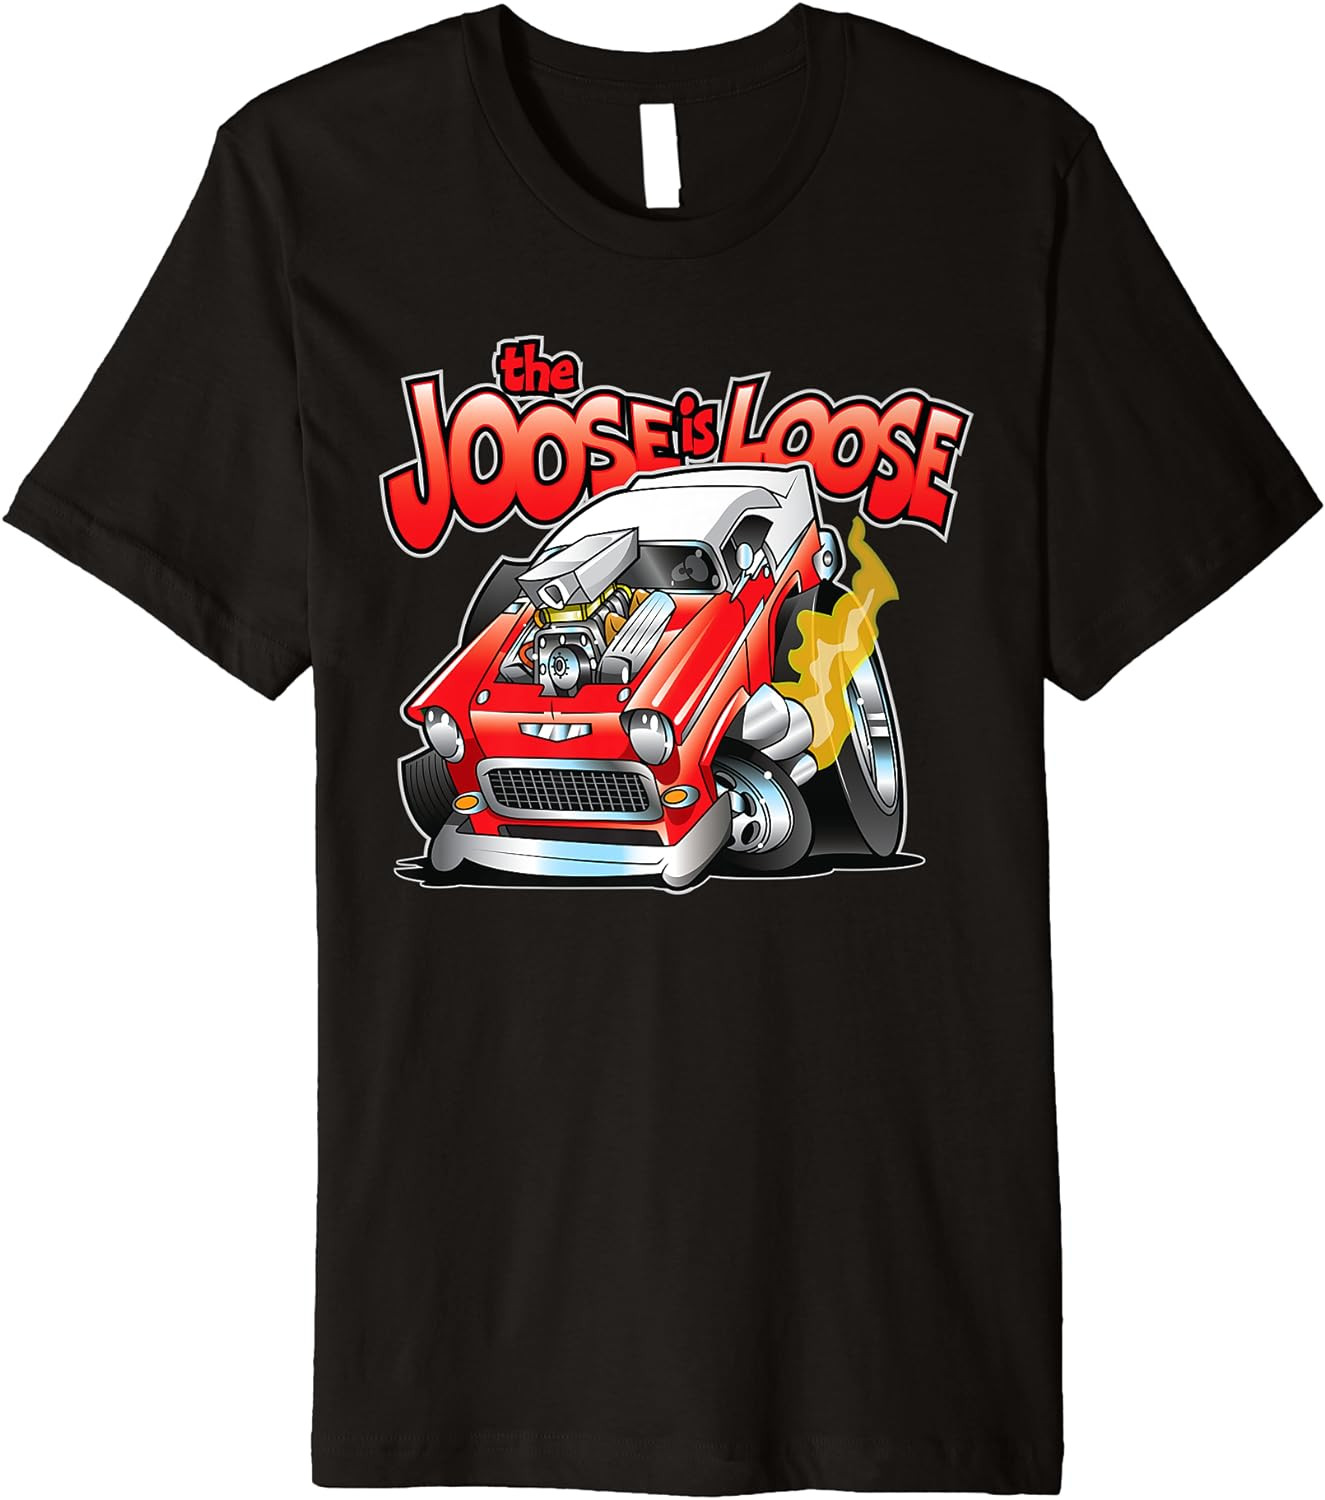 The Joose Is Loose Hot Rod Racing Classic Car T-Shirt